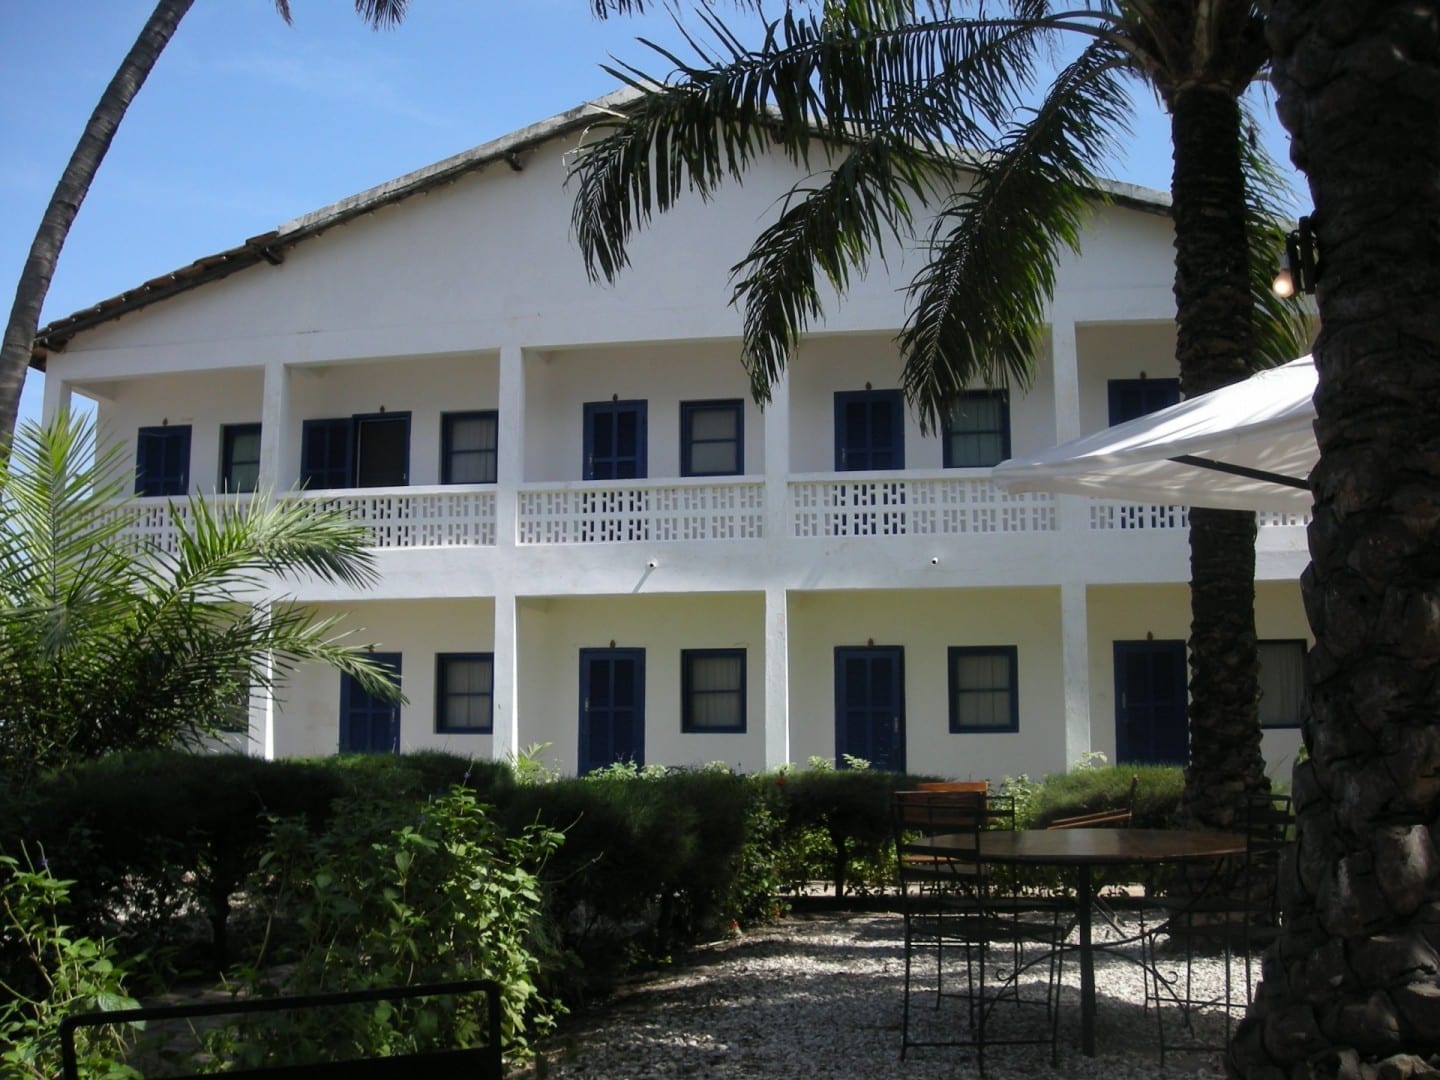 La casa de la misión católica construida en 1880 se ha convertido desde entonces en un hotel. Caraban Senegal